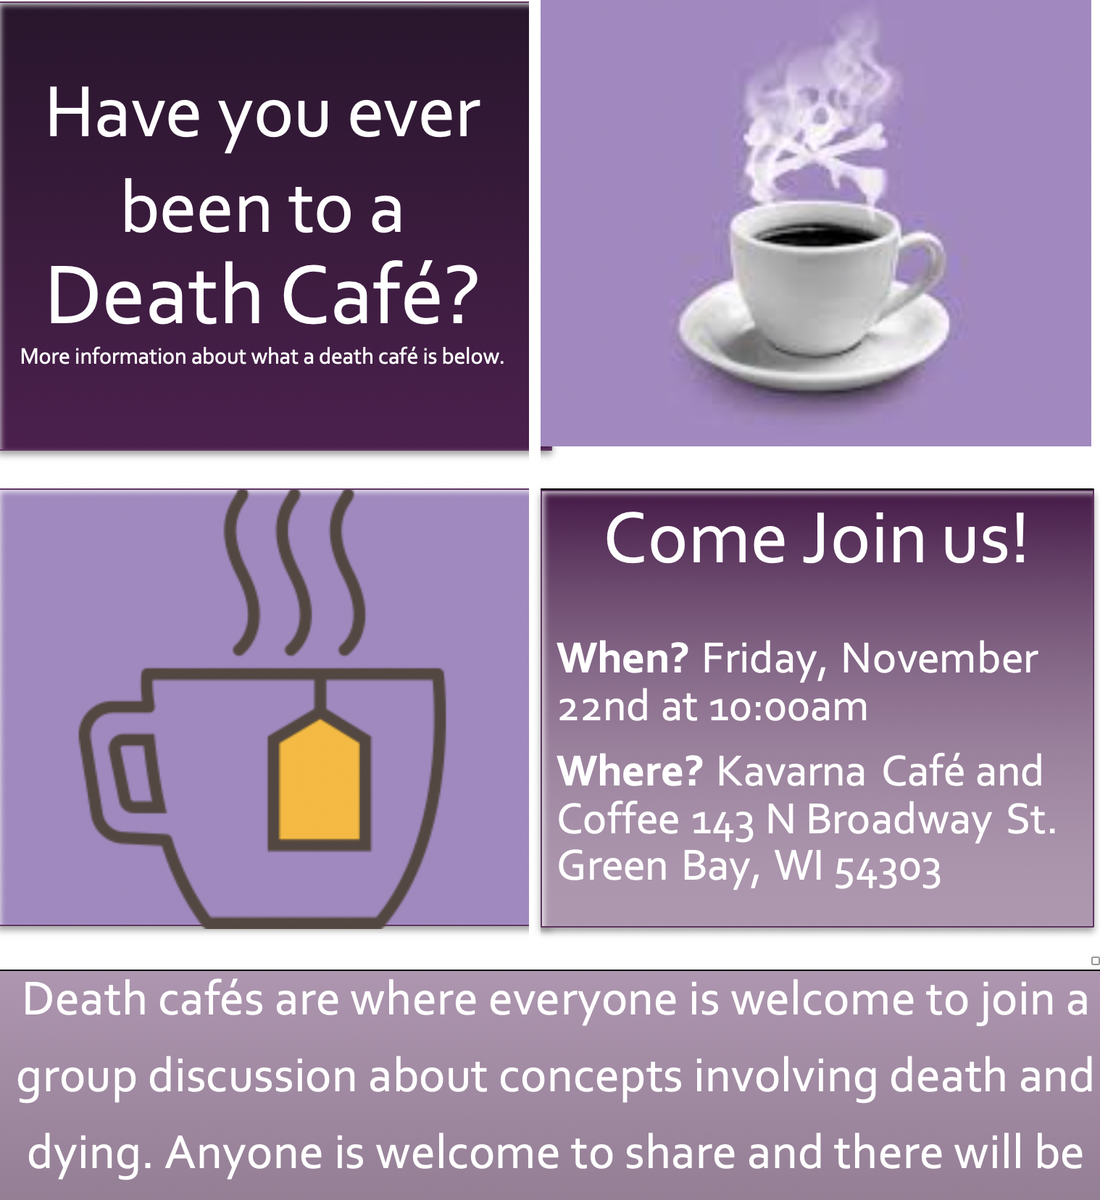 Green Bay Death Cafe